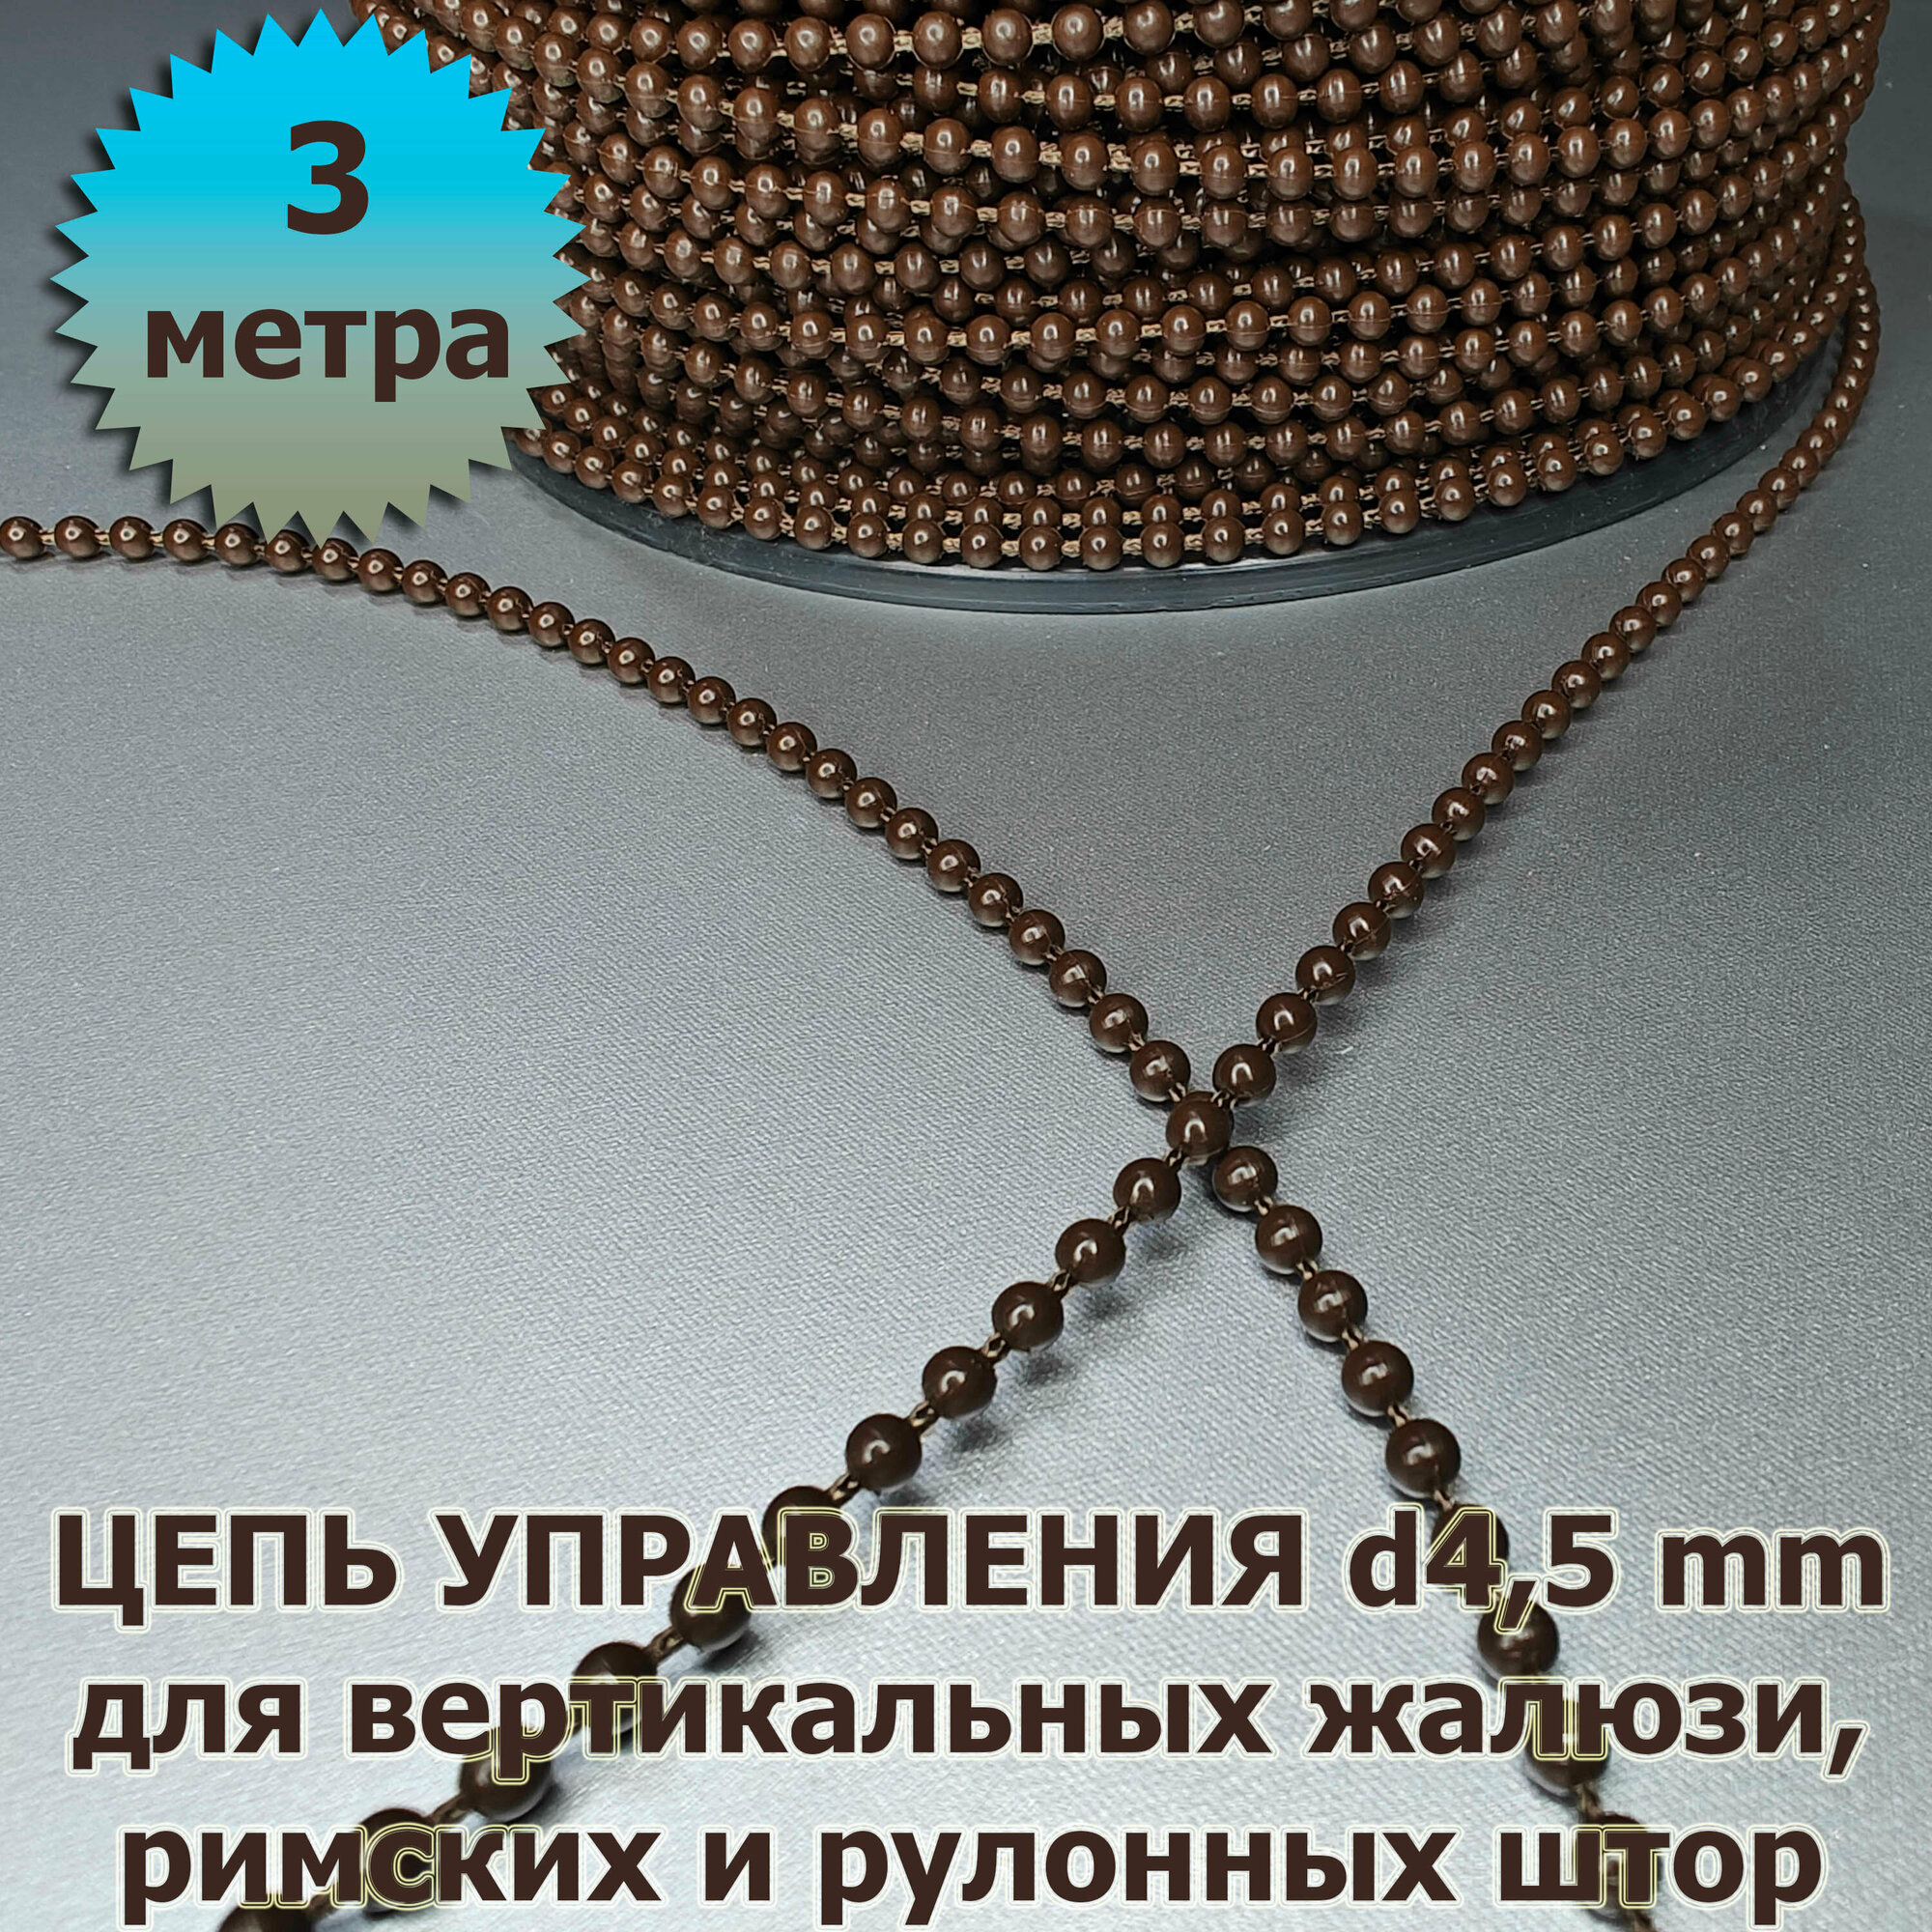 Цепочка (цепь) для вертикальных жалюзи, римских и рулонных штор диаметр 4,5 мм 3 метра коричневая